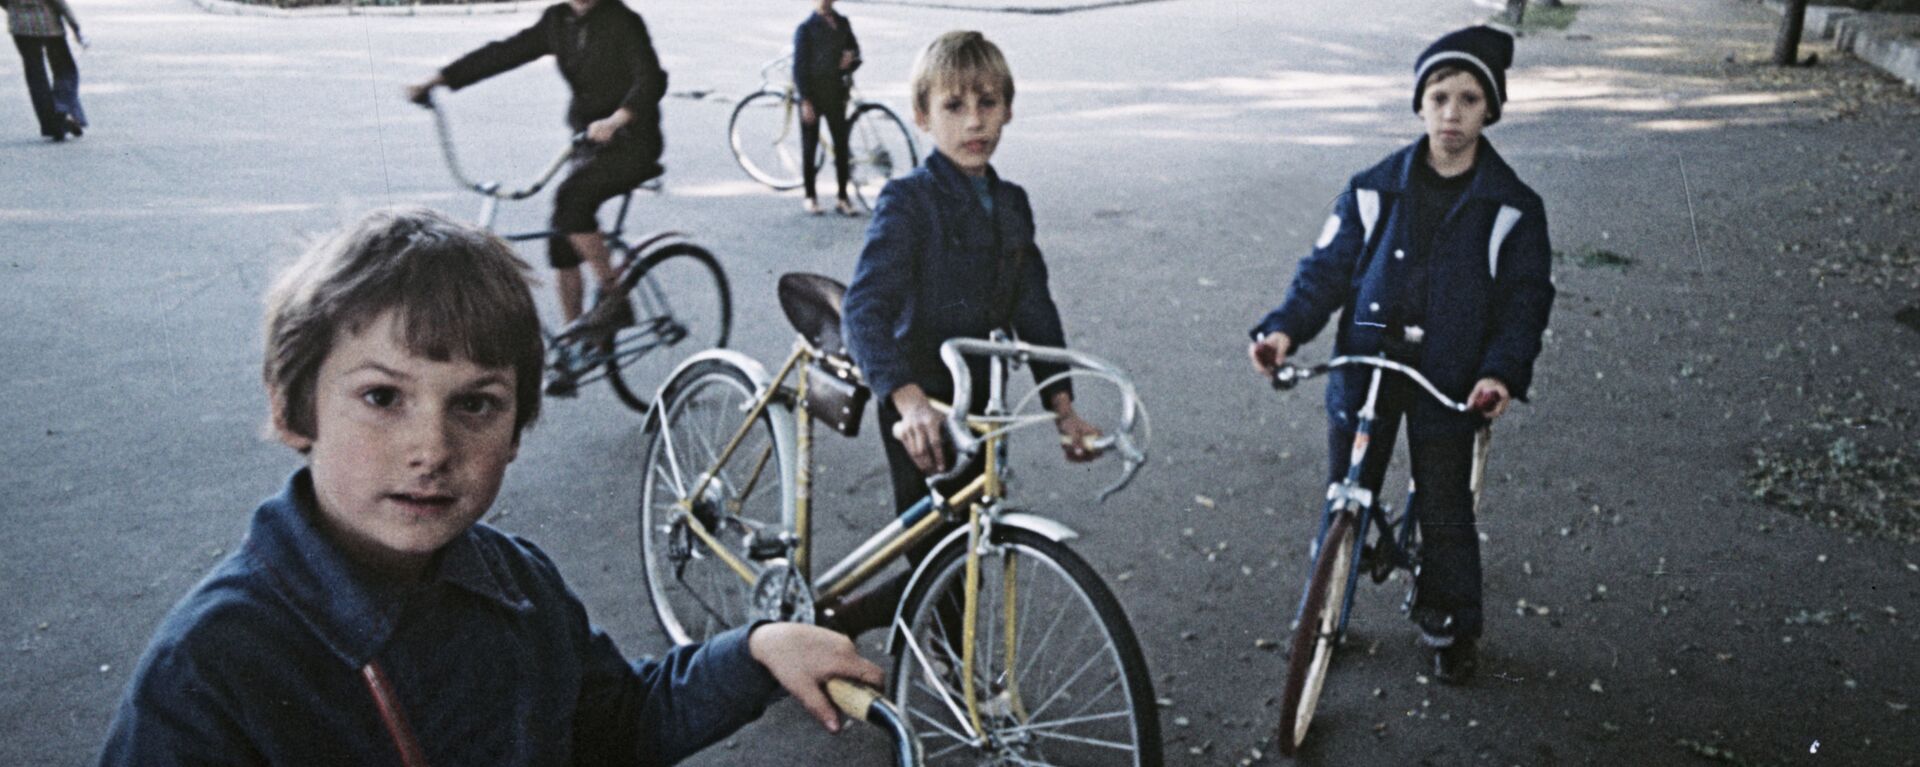 Адэскія хлопчыкі катаюцца на роварах на адной з вуліц горада, 1978-ы - Sputnik Беларусь, 1920, 05.06.2021